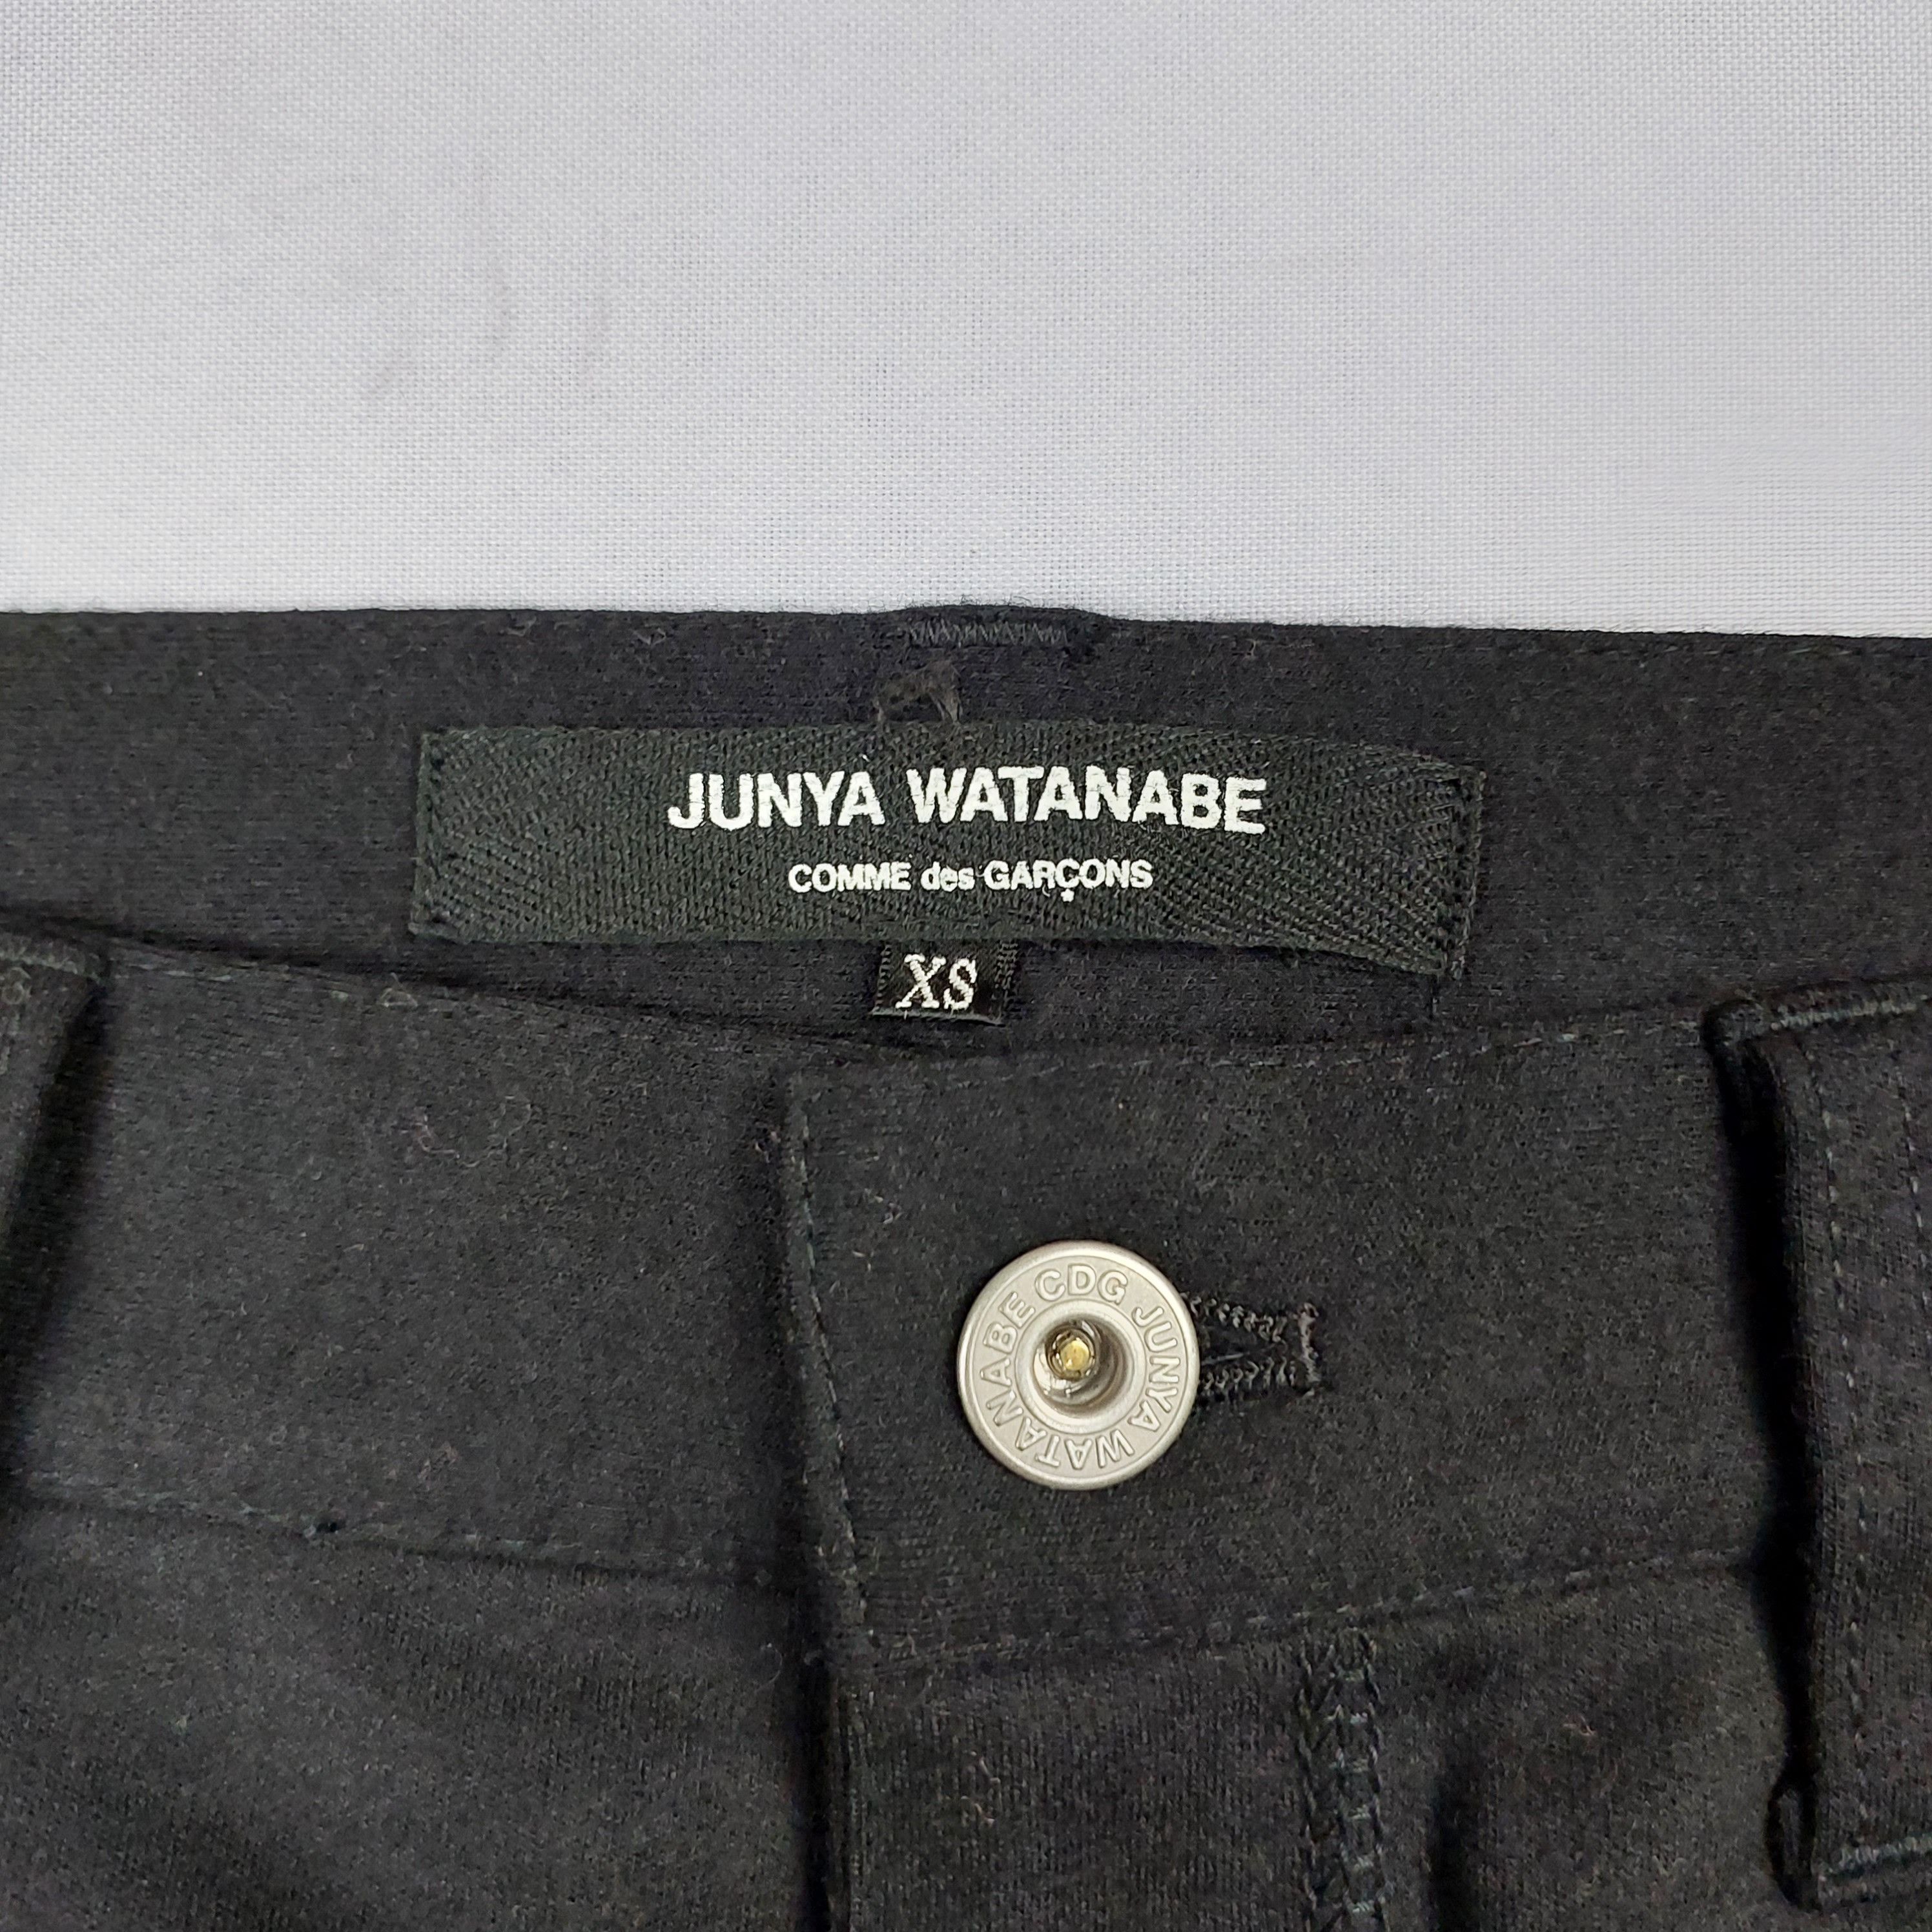 Junya Watanabe CDG 2016 - Wool Easy Pants - 5